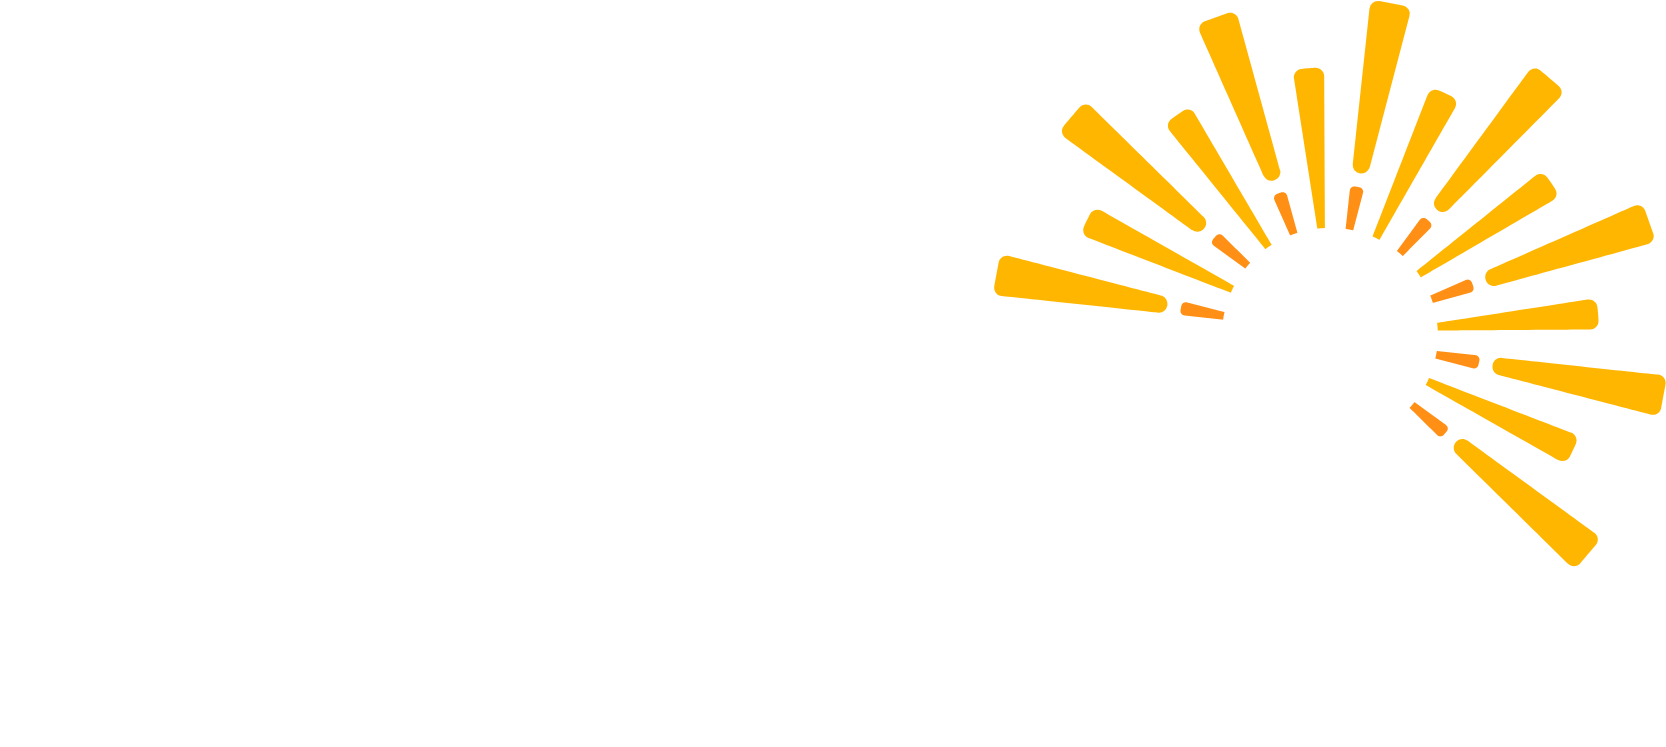 Day One Biopharmaceuticals Logo groß für dunkle Hintergründe (transparentes PNG)